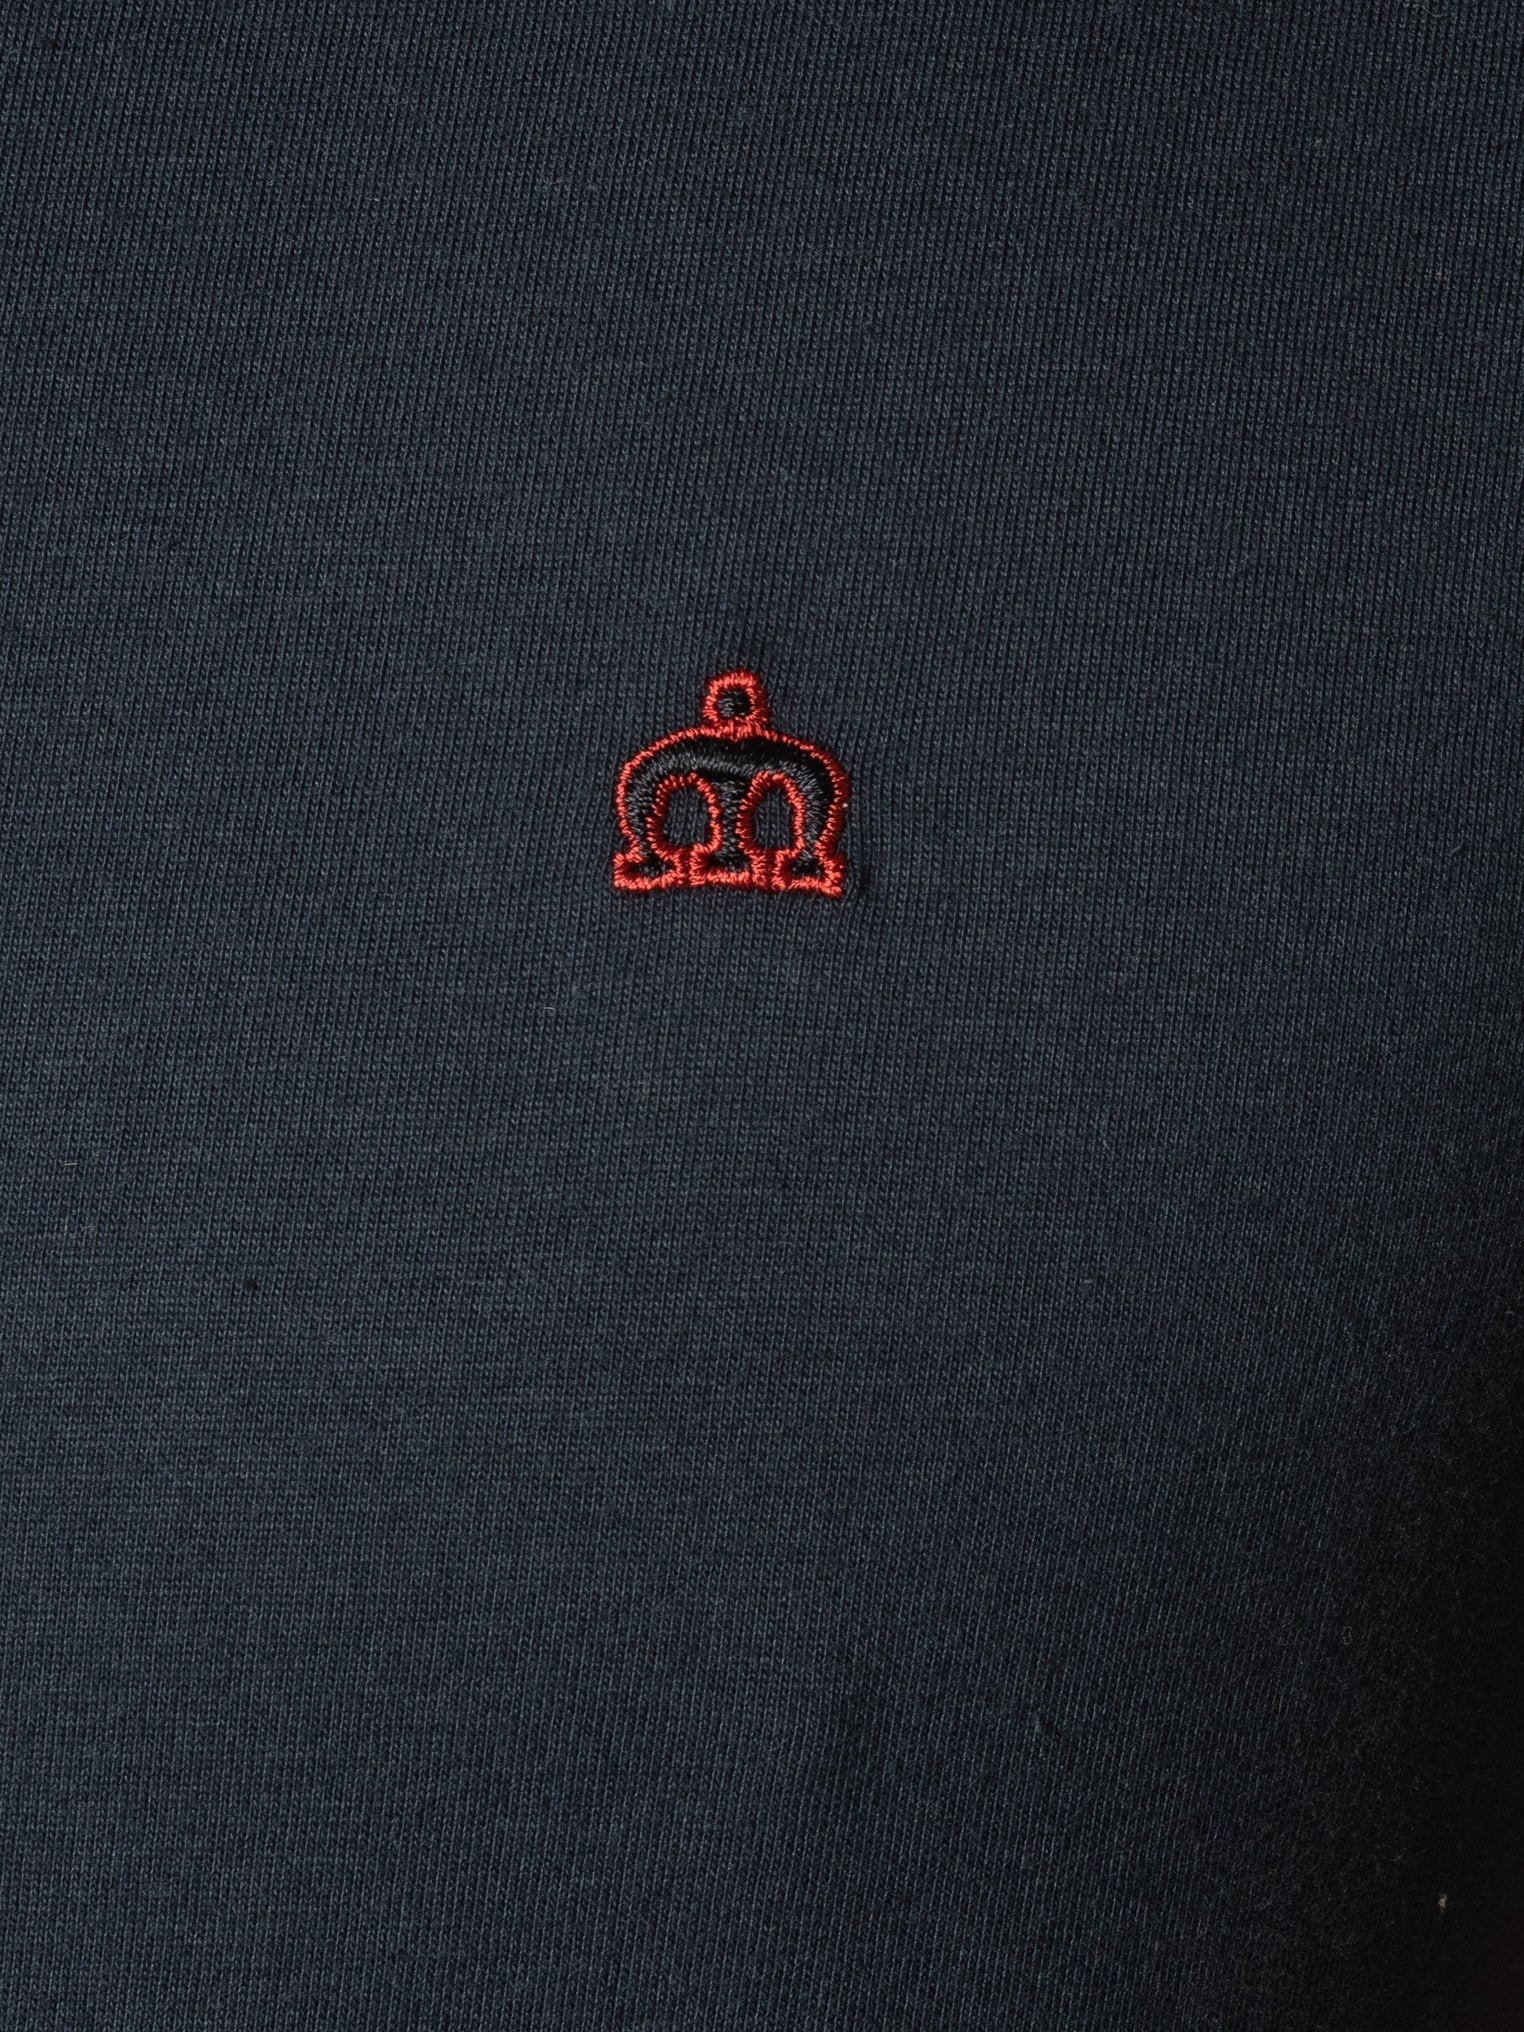 Однотонная мужская футболка Merc Keyport с вышитым на груди контрастным логотипом Корона, темно синяя (navy), бренда MERC, купить на официальном сайте